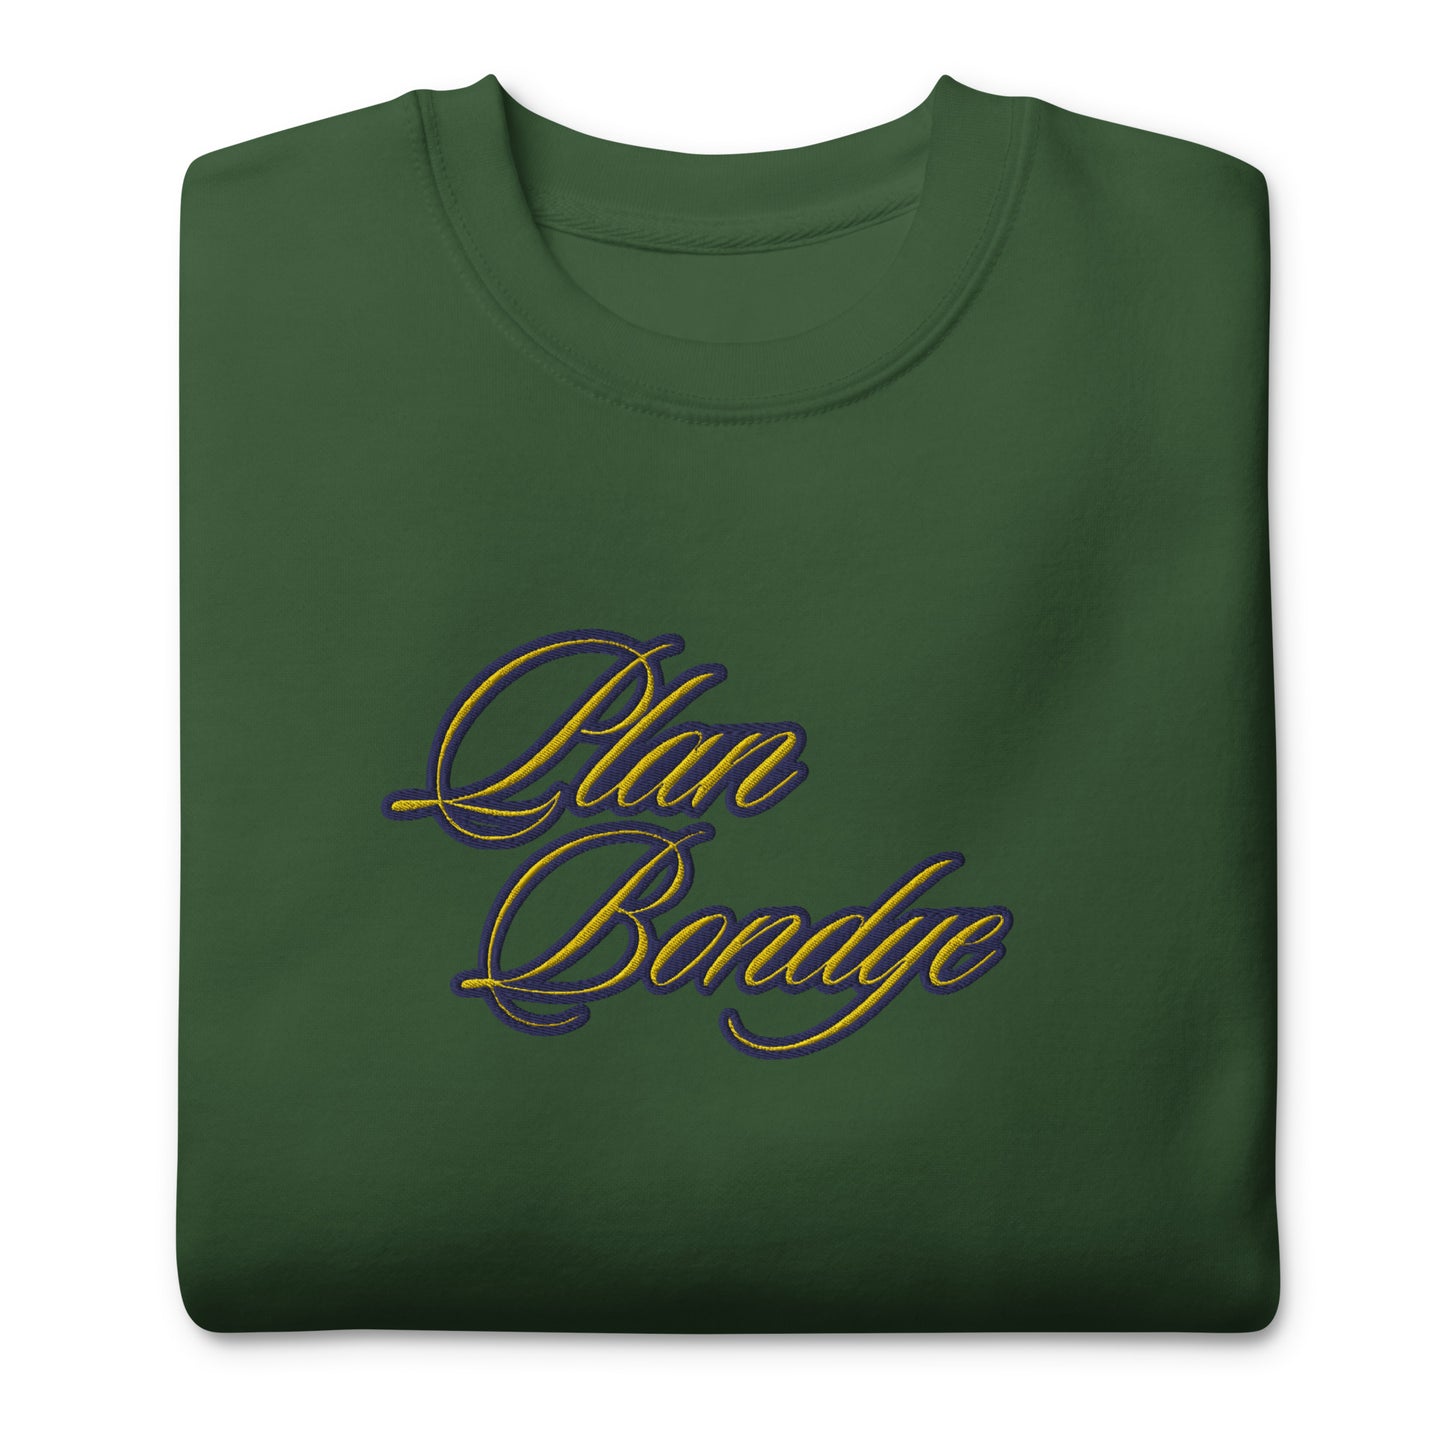 BigSmoke Soprano Clothing: BigSmoke Soprano Worldwide Collection: Heritage Sweatshirt (Haitian Creole Edition